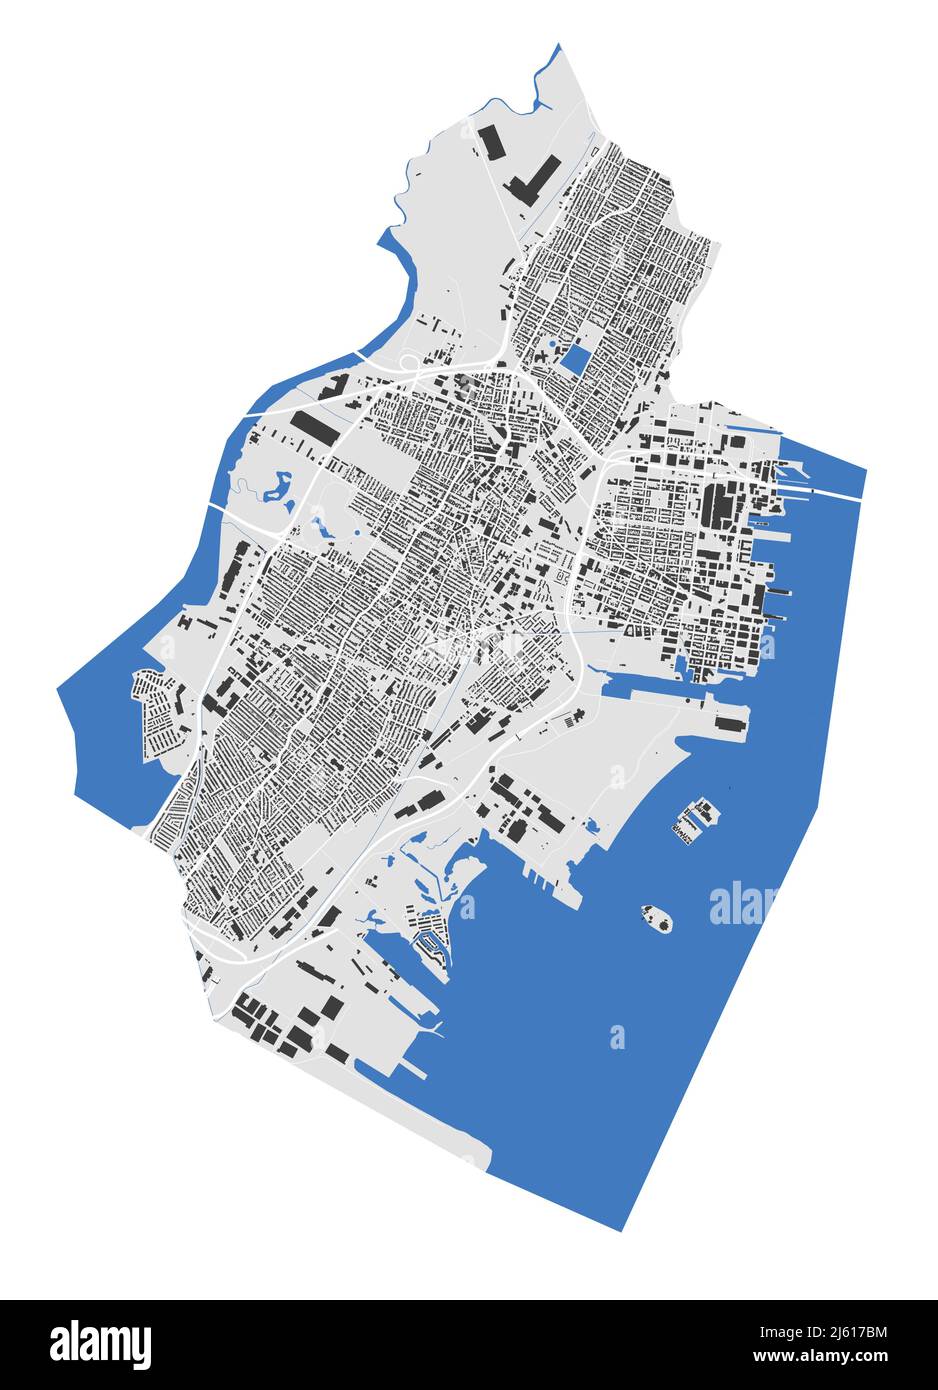 Jersey-Karte. Detaillierte Karte des Verwaltungsgebiets der Stadt Jersey. Stadtbild-Panorama. Lizenzfreie Vektorgrafik. Übersichtskarte mit Gebäuden, Wasser, Stock Vektor